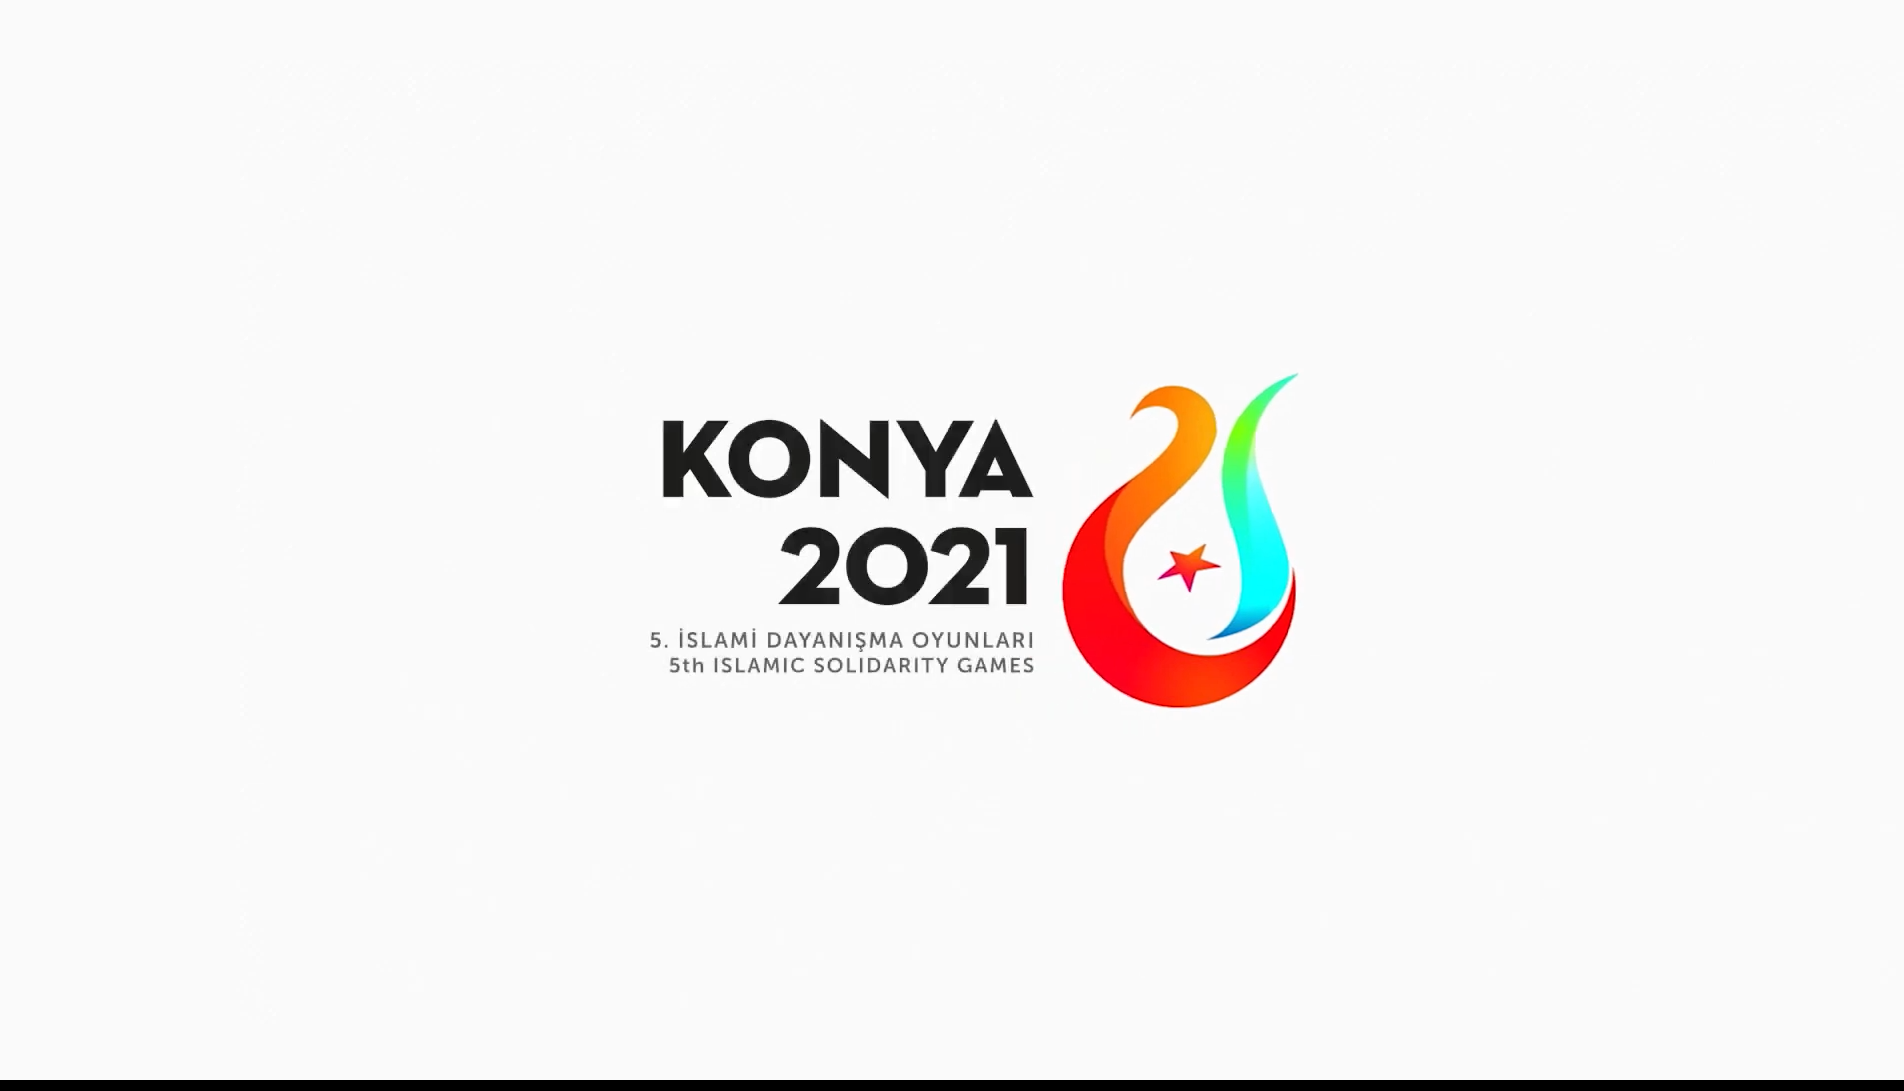 CDM Highlights KONYA 2021 Games